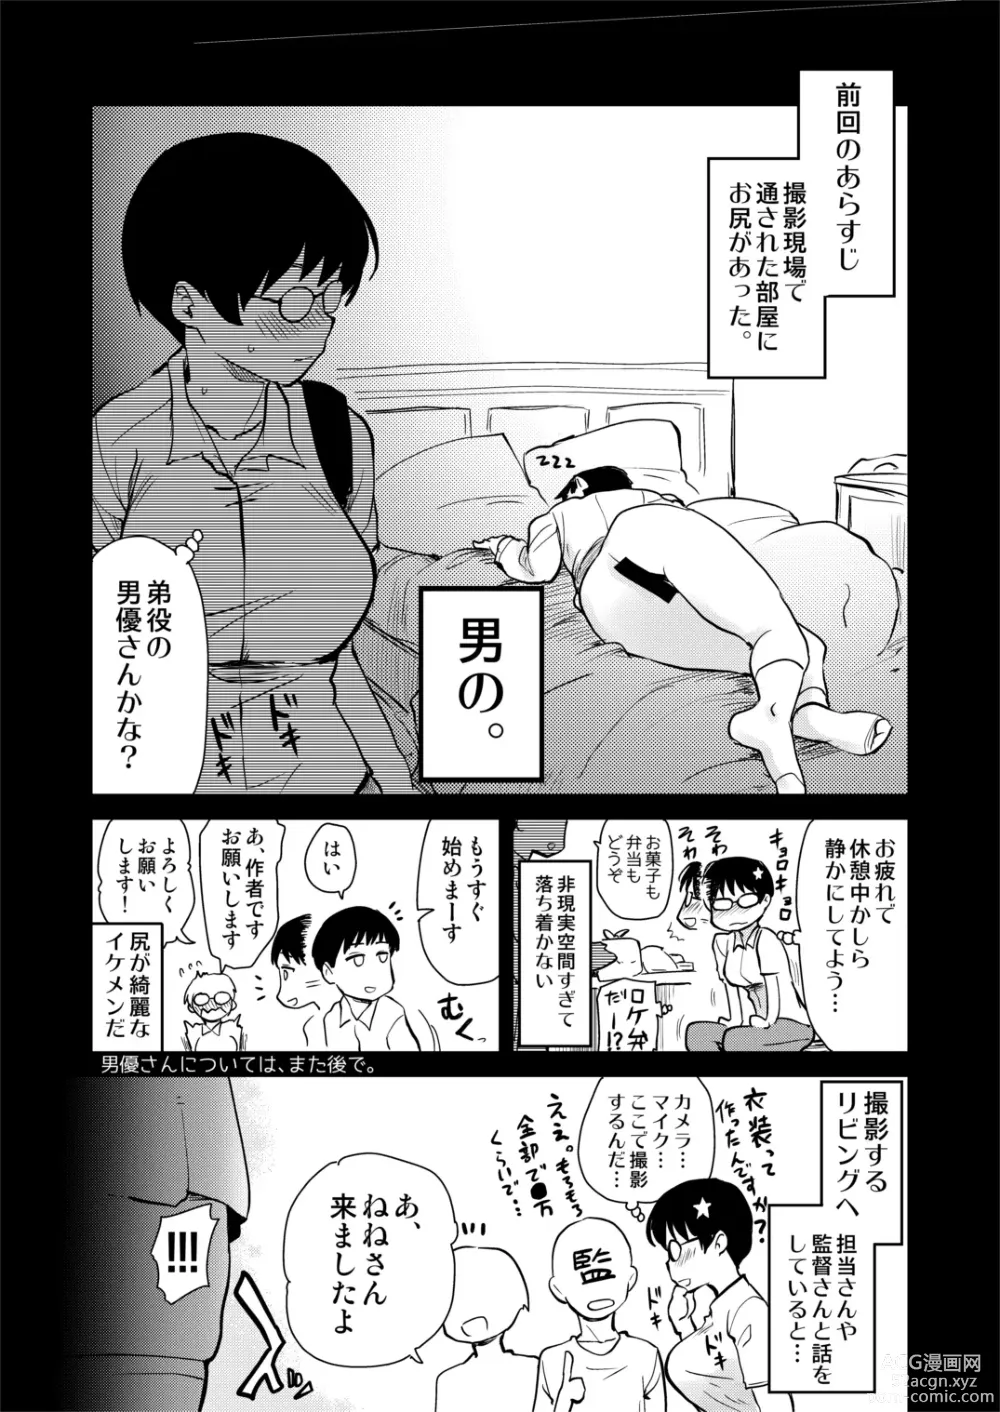 Page 12 of doujinshi Jibun no Kaita Manga ga Jissha AV ni!? Sekkaku nano de Satsuei Genba no Kengaku ni Ittekimashita.